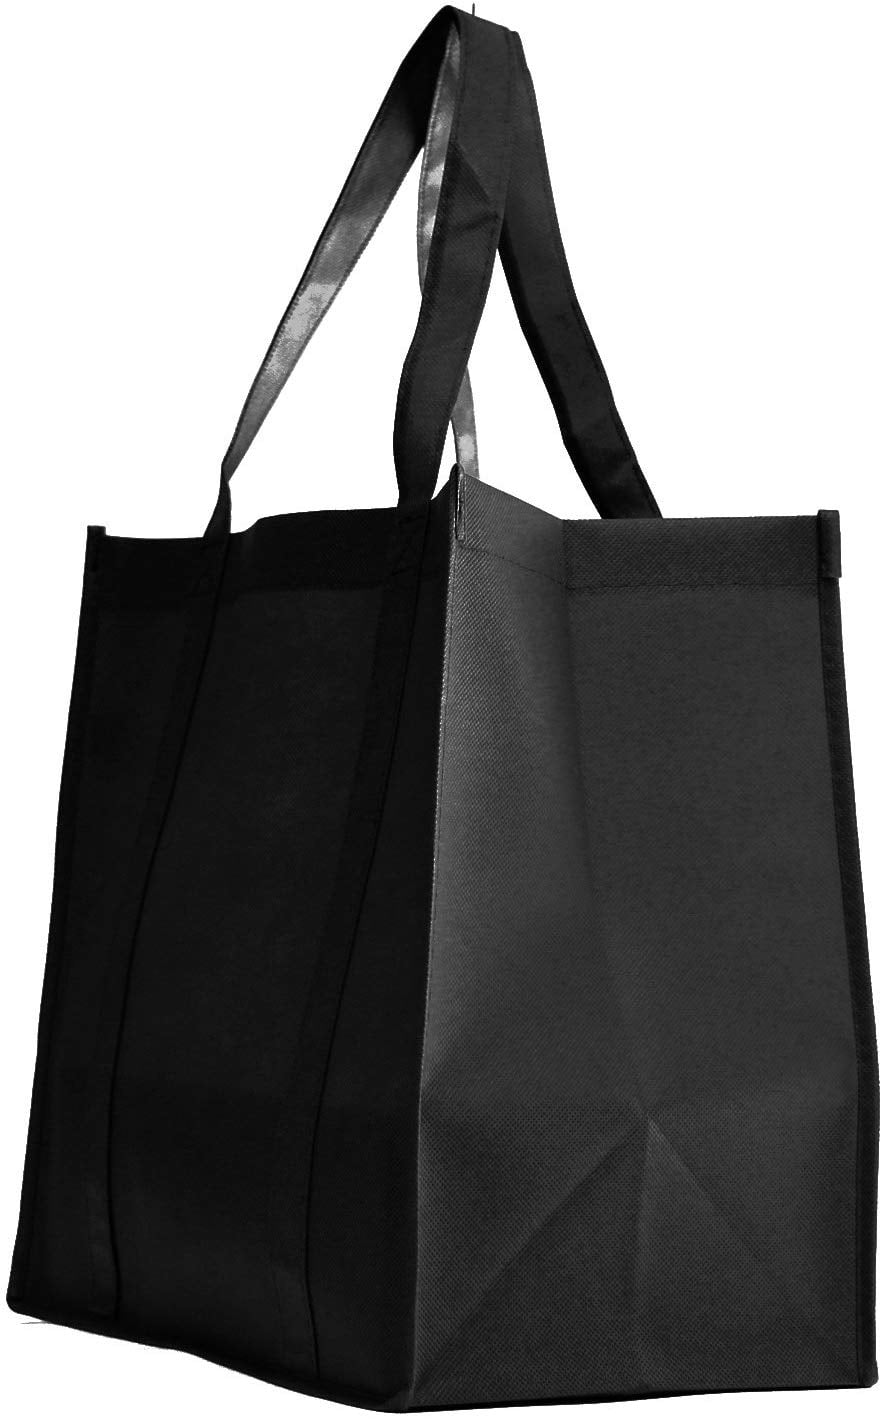 Qty 5 Jumbo Strong Reusable Grocery Shopping Bag Black XL 22"W x 16"H x 10"D 